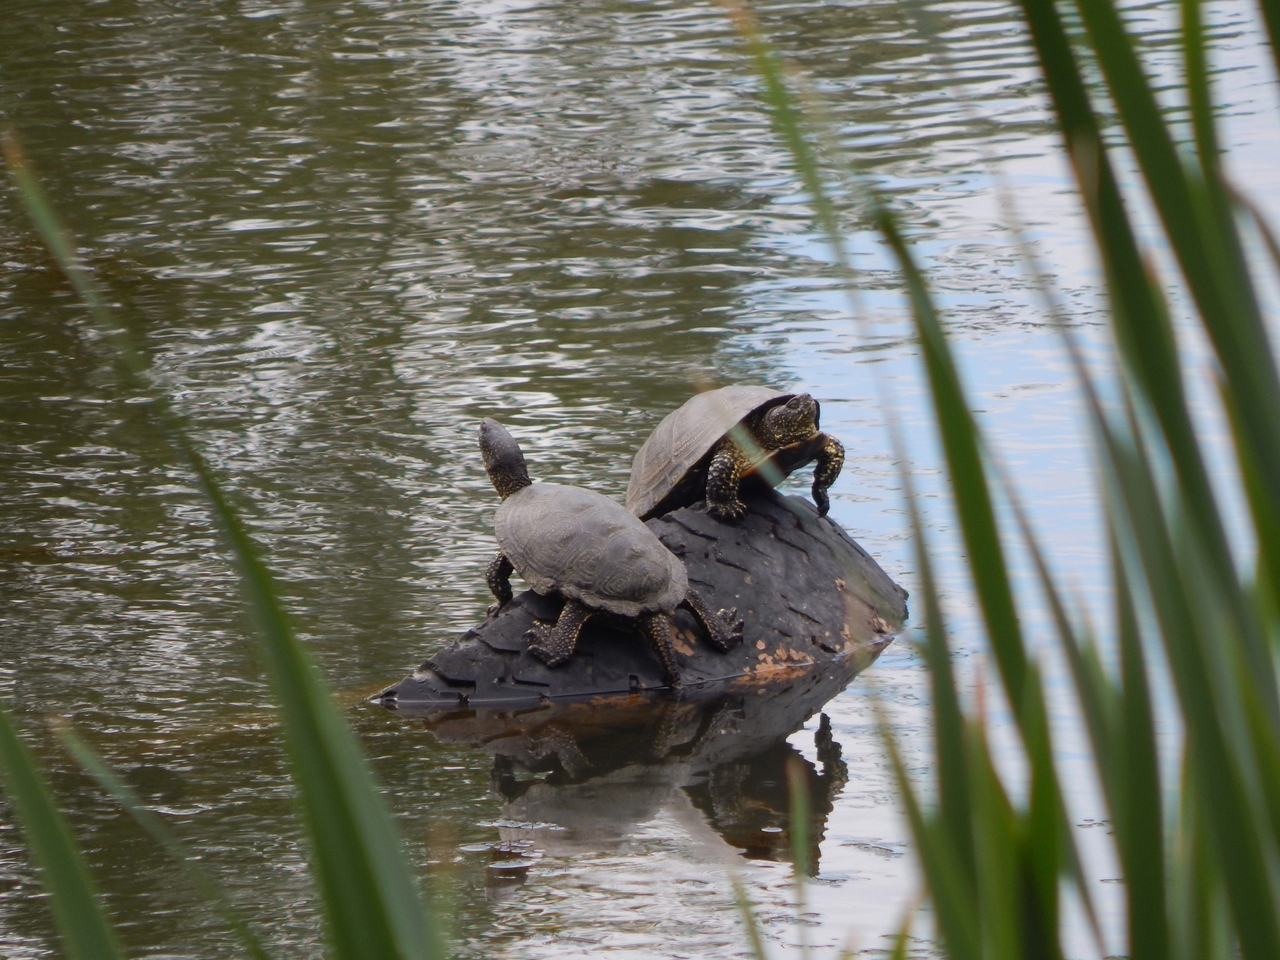 Черепахи из Черезовских прудов выжили после выброса химикатов